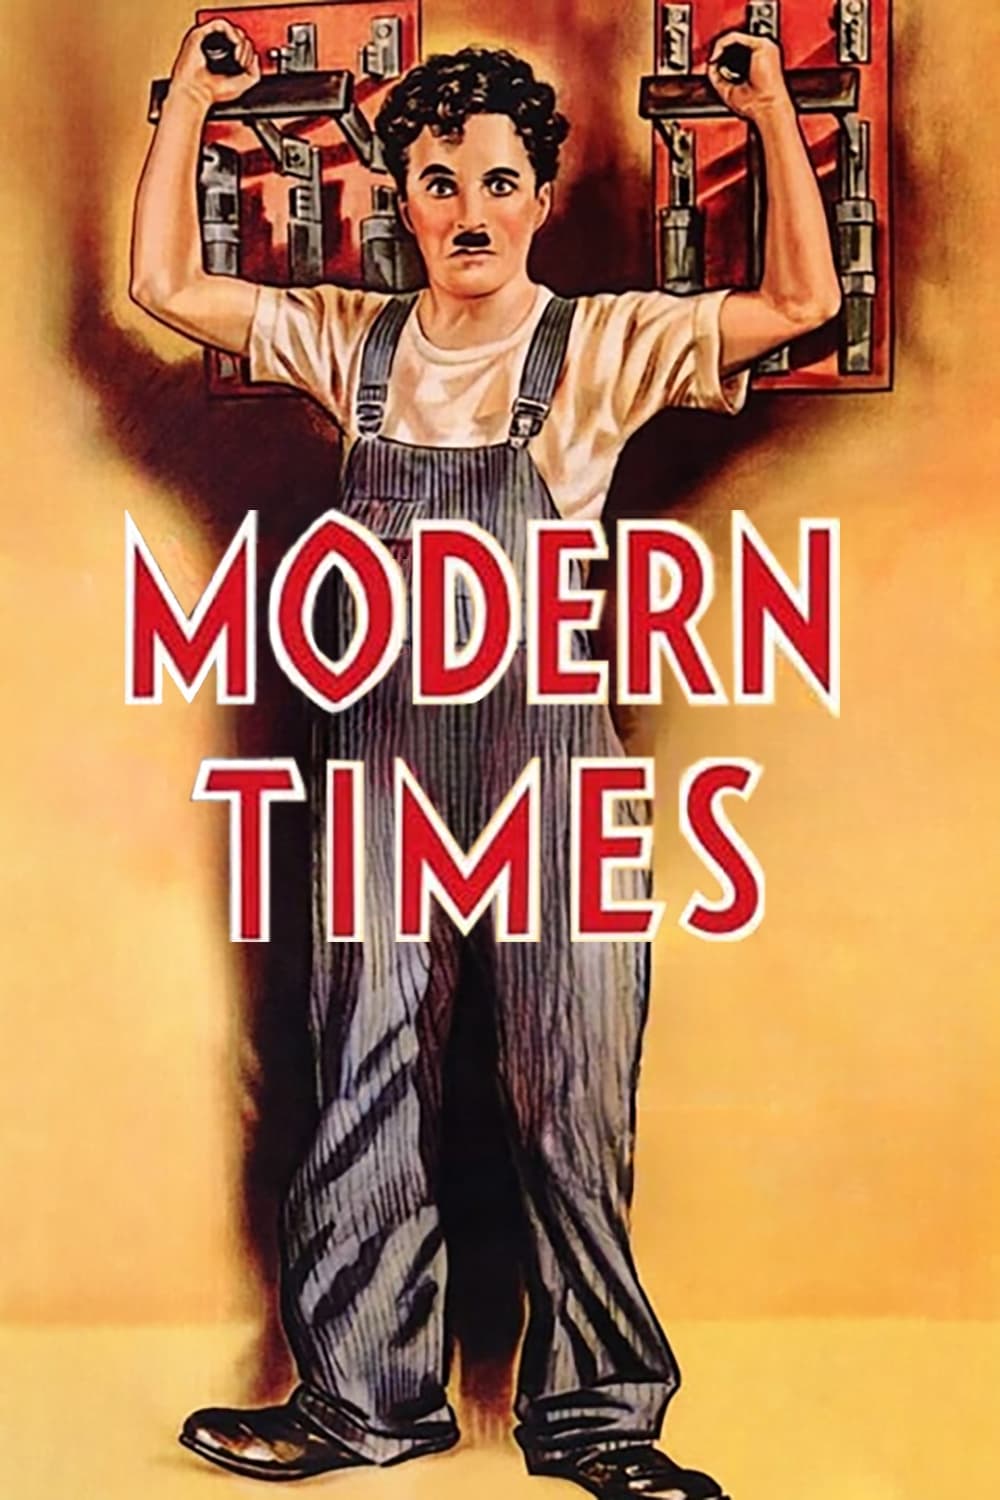 Les Temps Modernes (1936)